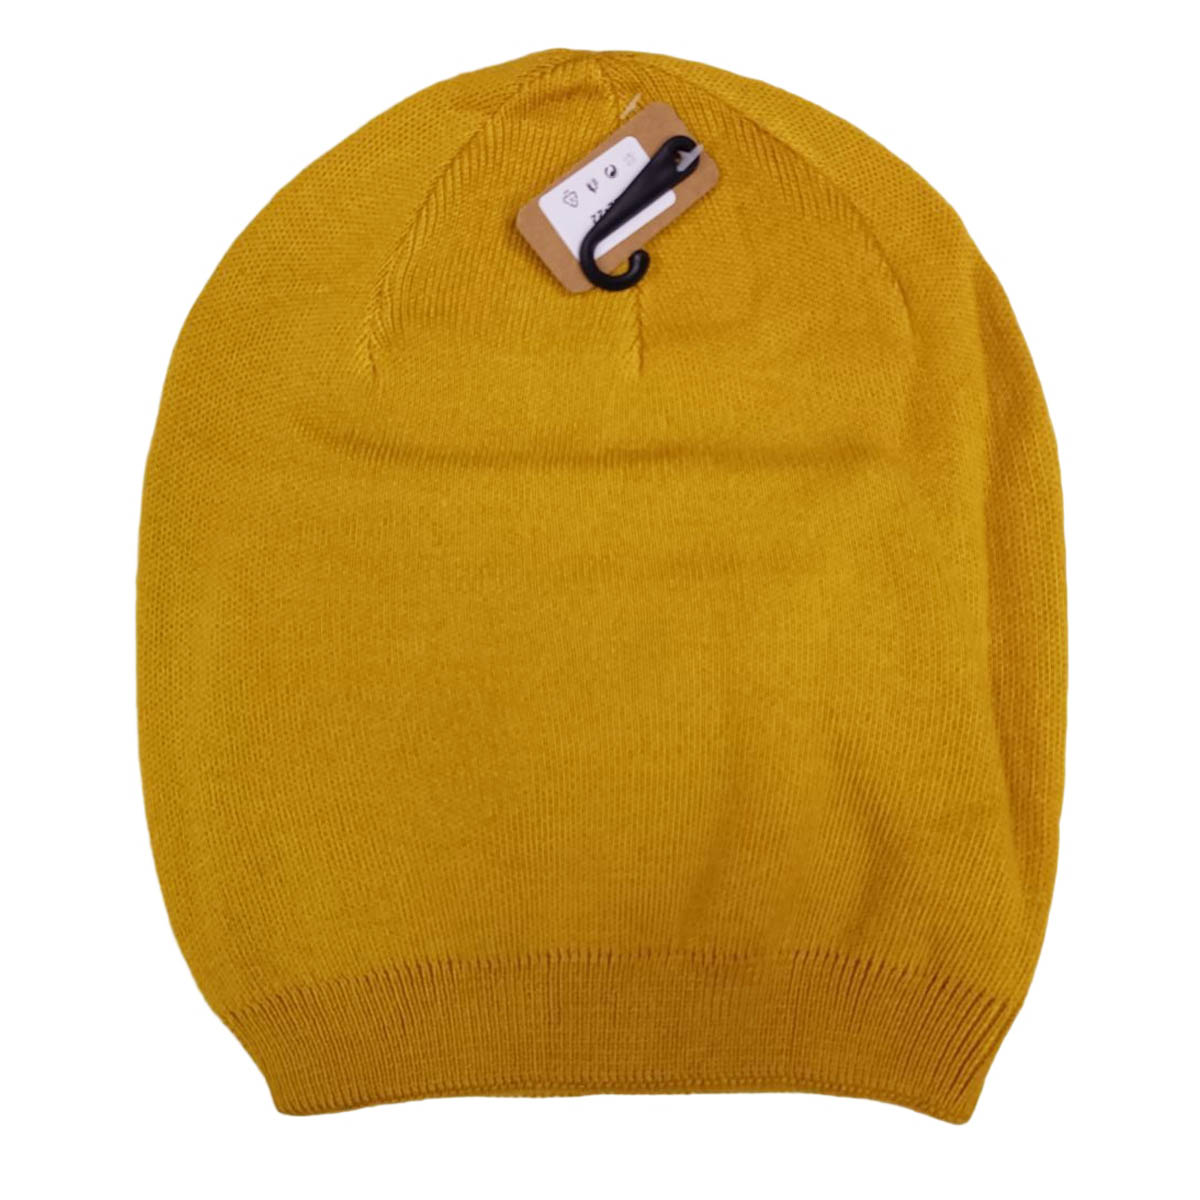 Bonnet laine cachemire \'Highlands\' jaune moutarde - taille unique - [R8903]